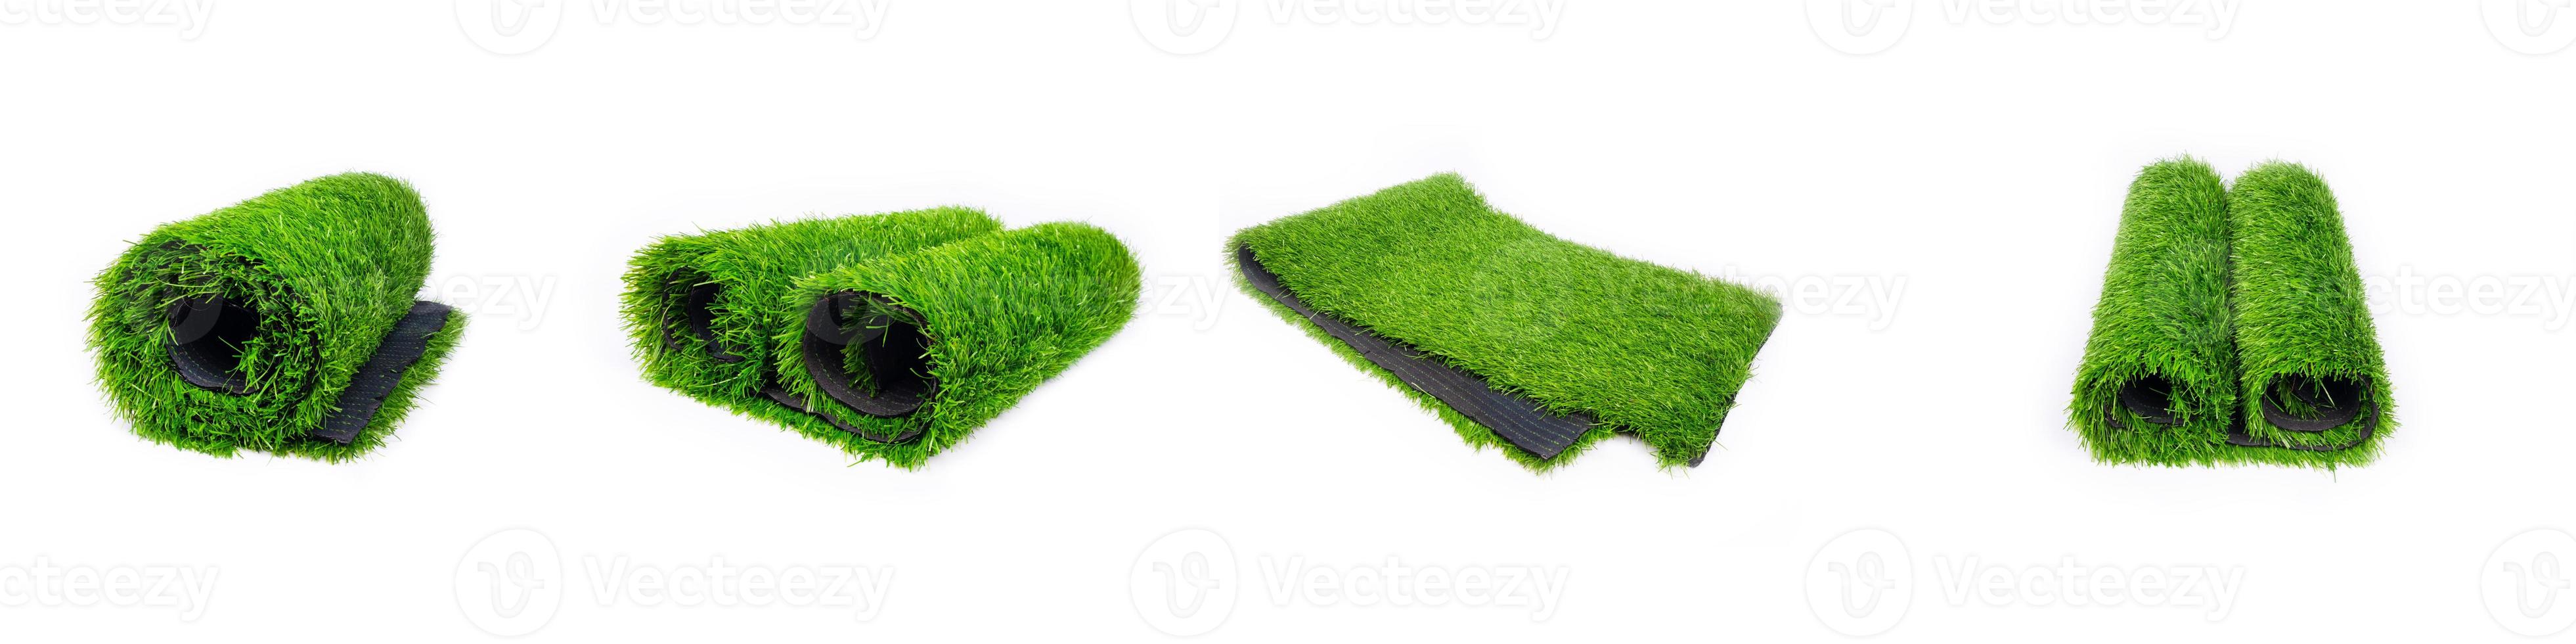 uppsättning rulle av konstgjorda gröna gräs isolerad på vit bakgrund, plast gräsmatta foto